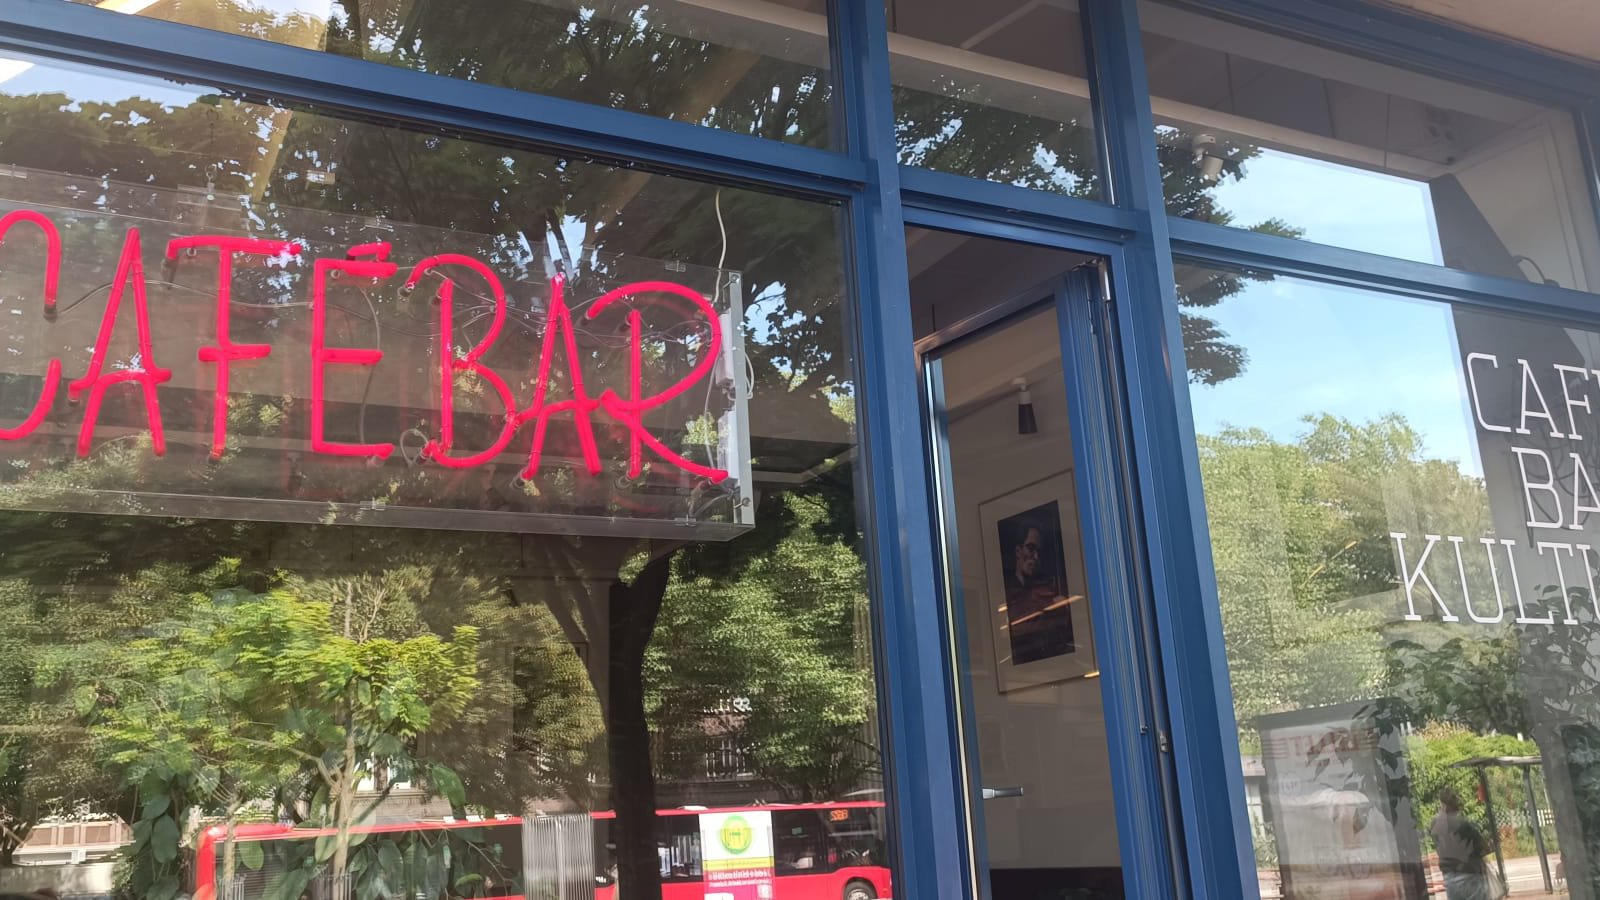 Ein Fenster, in welchem sich Bäume spiegeln. Eine Anzeige aus Neon-Röhren schreibt "Cafébar" auf die Scheibe.